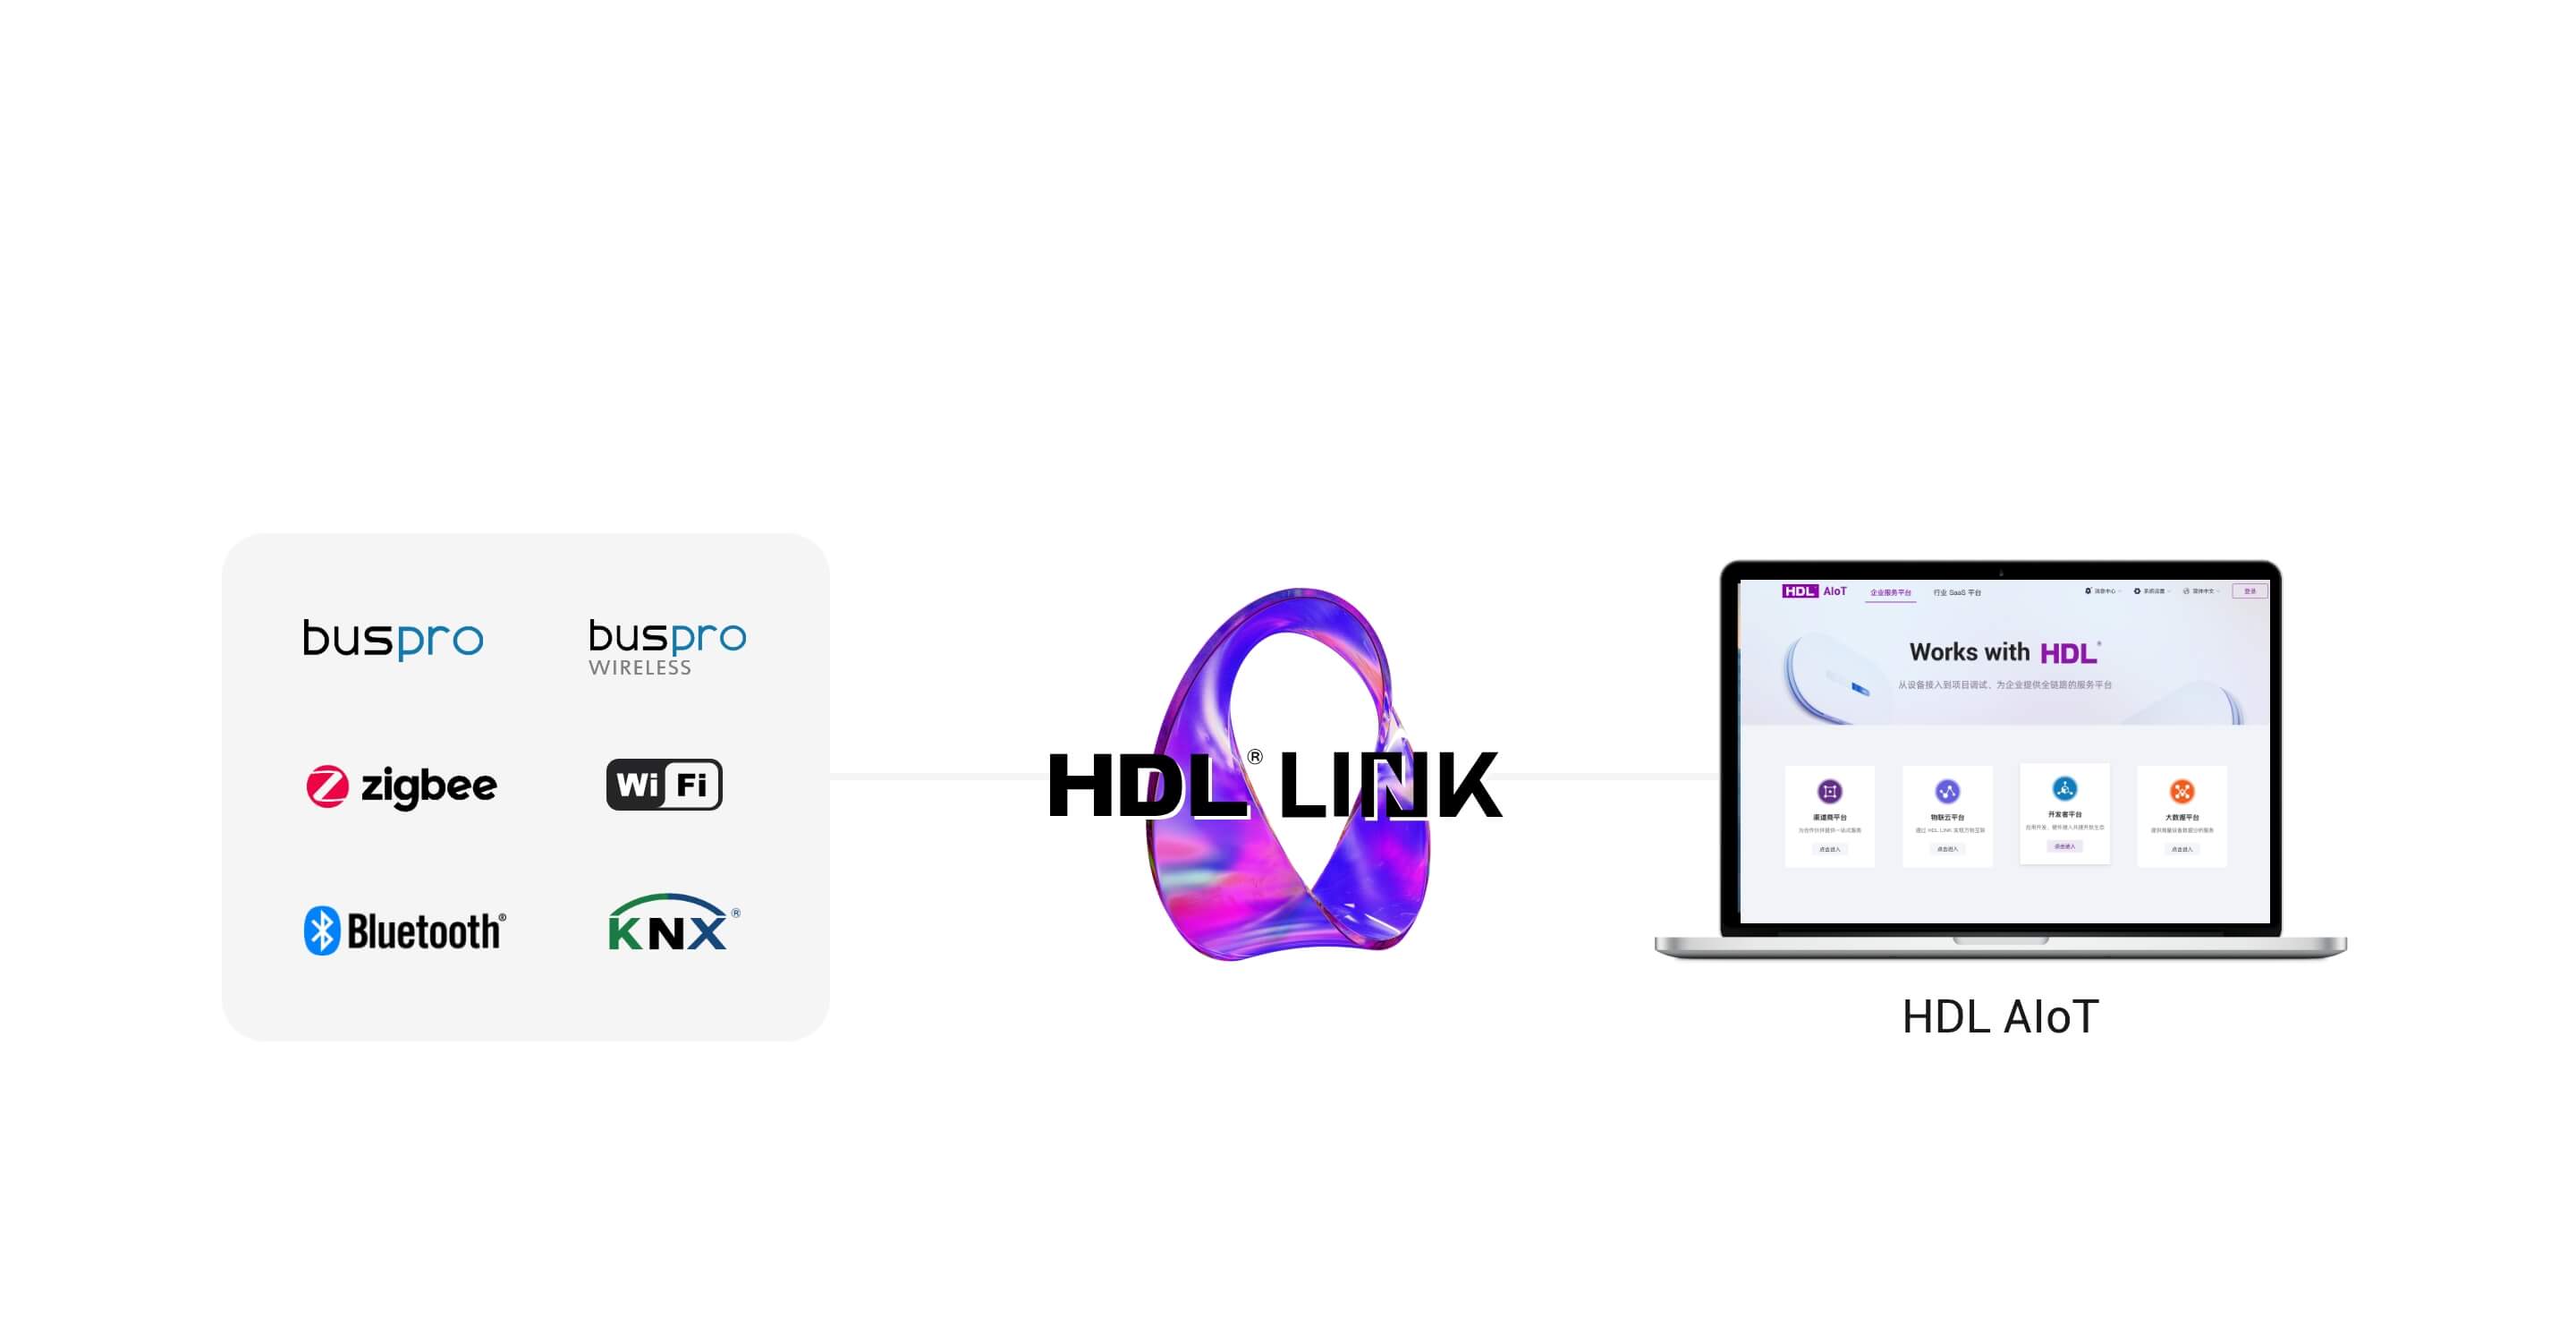 HDL Link